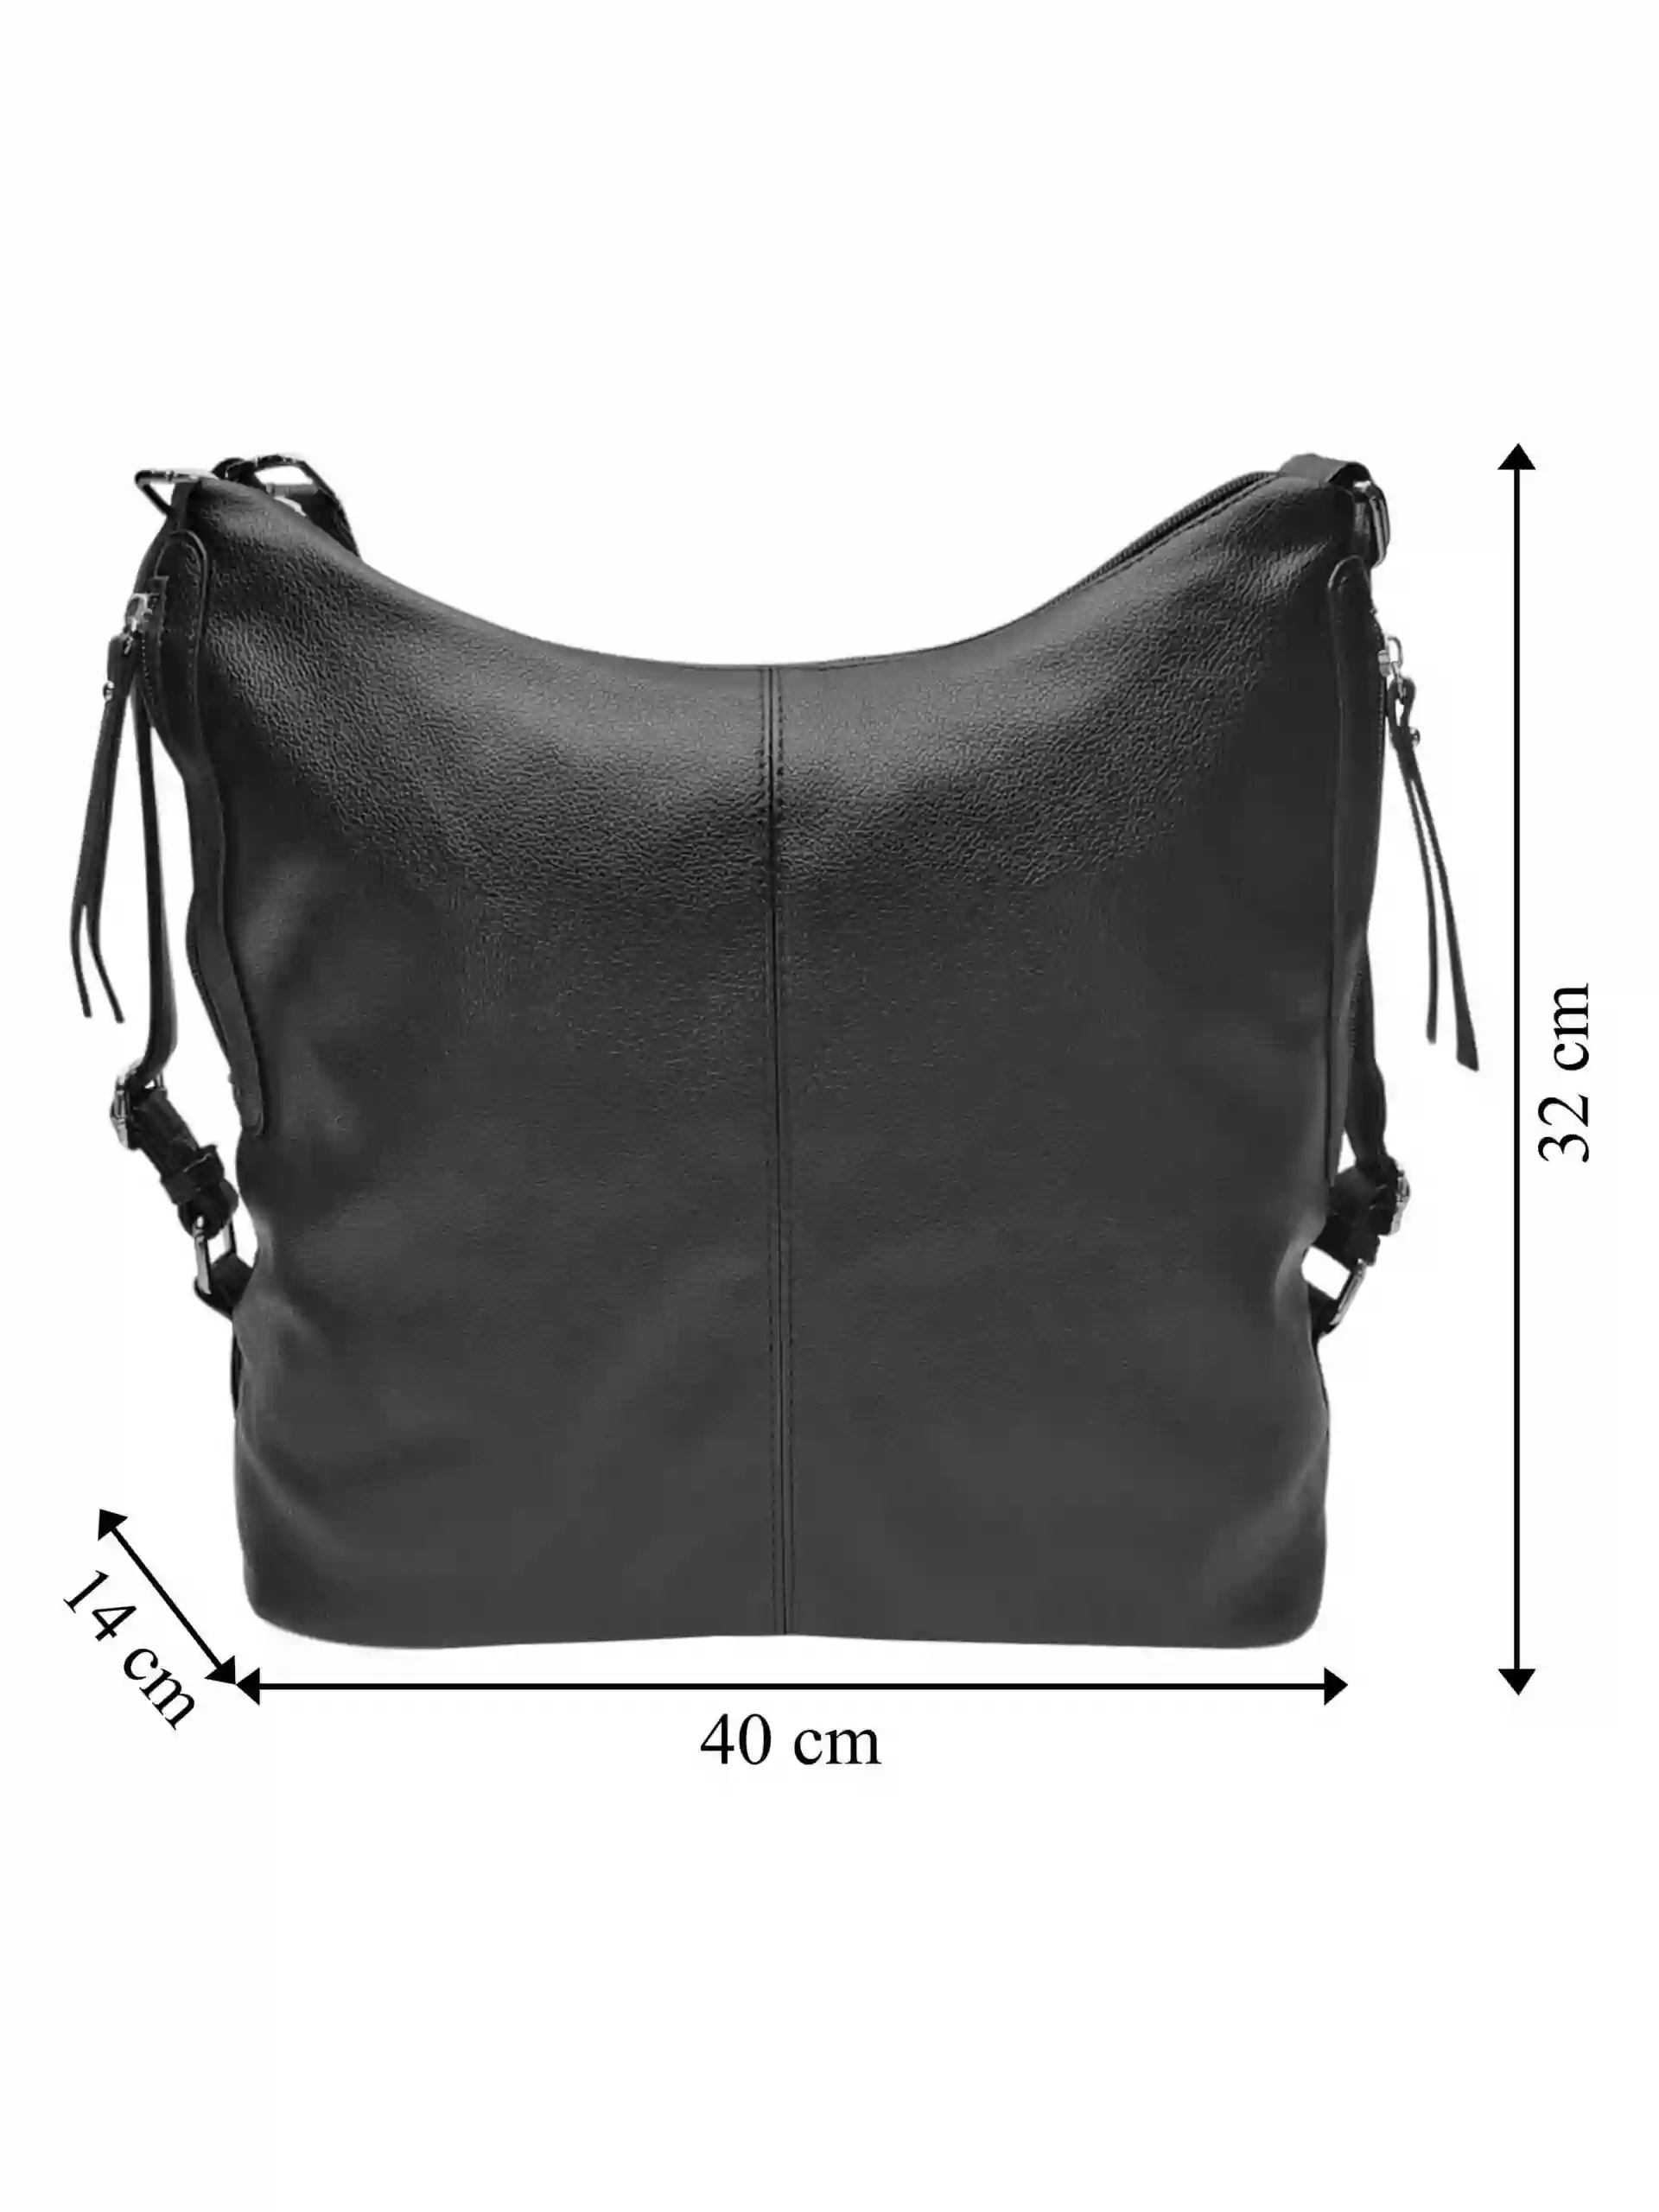 Velký černý kabelko-batoh s bočními kapsami, Tapple, 9314-3, přední strana kabelko-batohu s rozměry